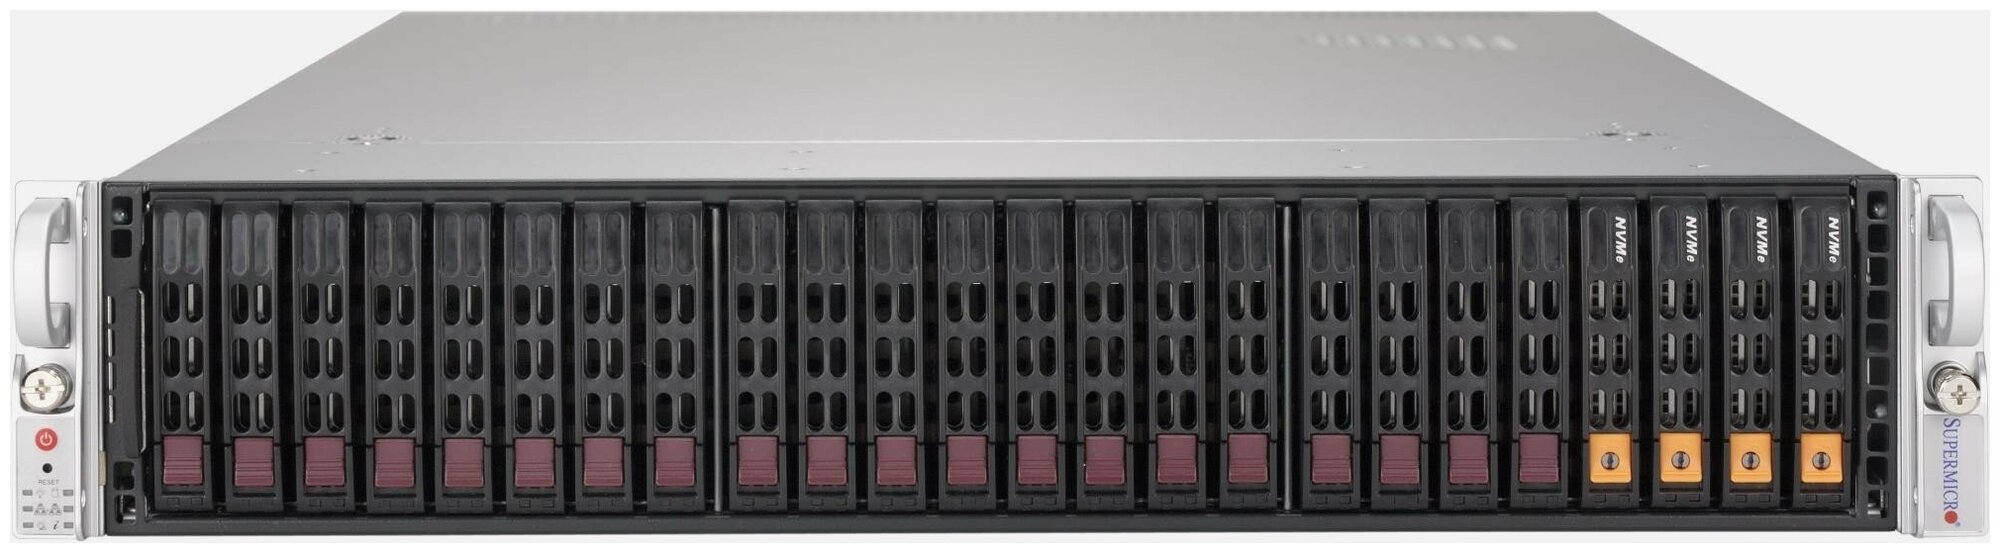 Сервер Supermicro SuperServer 2049U-TR4 без процессора/без ОЗУ/без накопителей/количество отсеков 25" hot swap: 24/2 x 1600 Вт/LAN 1 Гбит/c